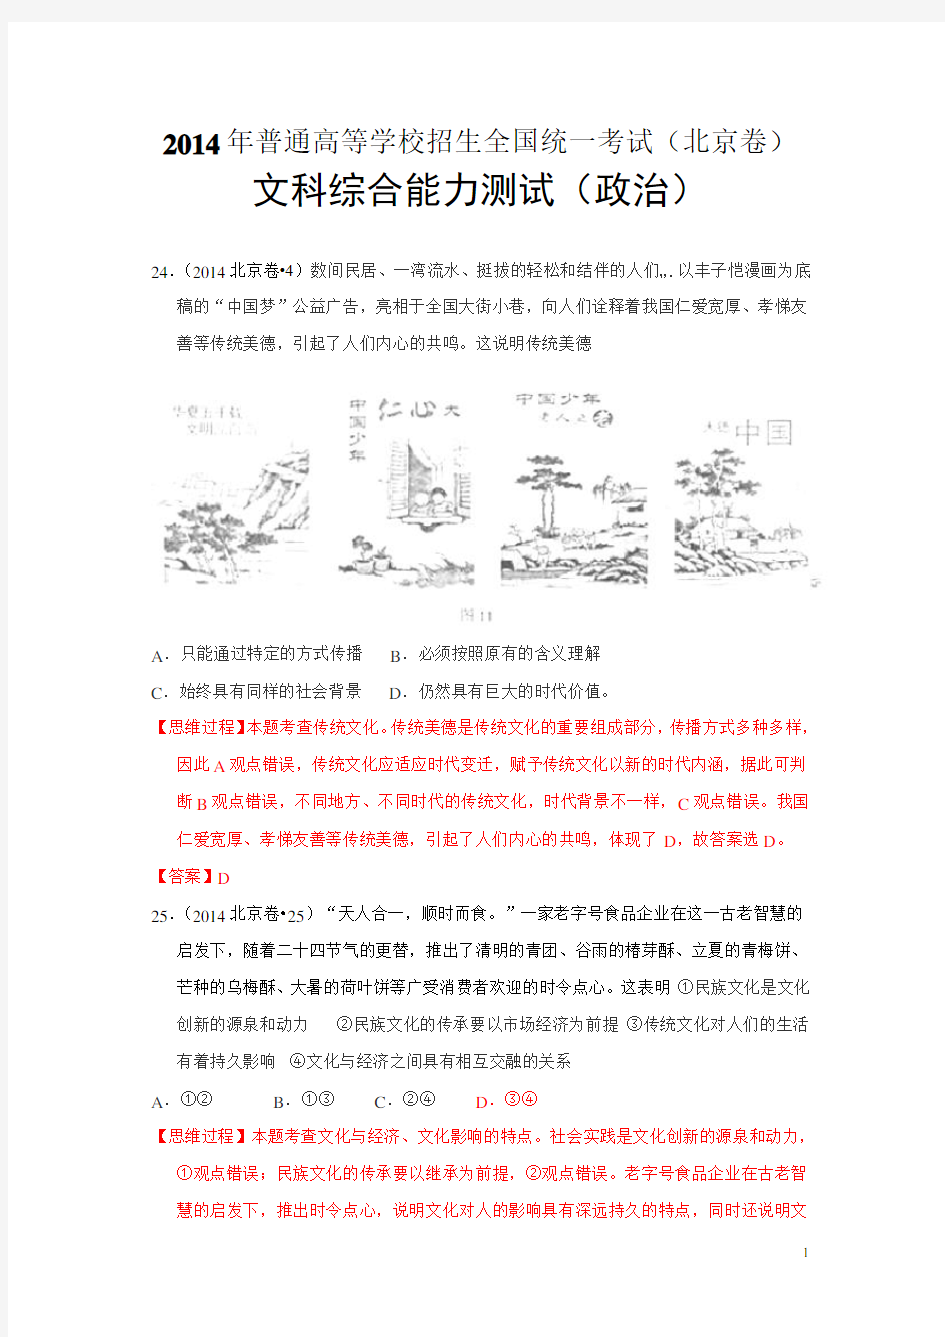 2014年高考真题——文综政治(北京卷)解析版